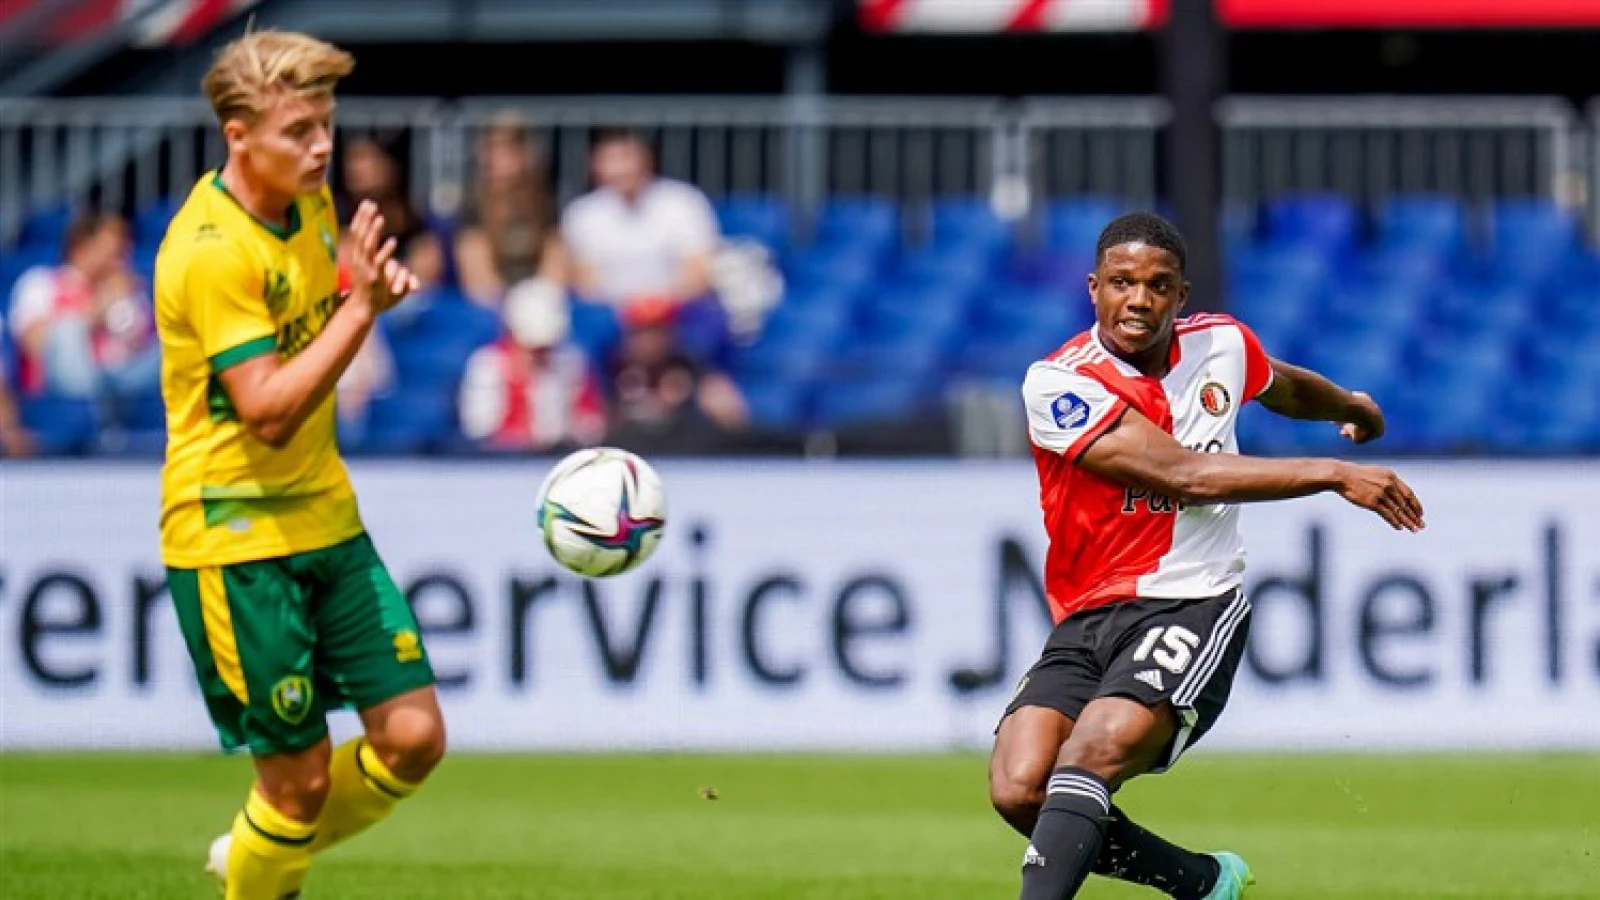 LIVE | FC Luzern - Feyenoord 0-3 | Einde wedstrijd